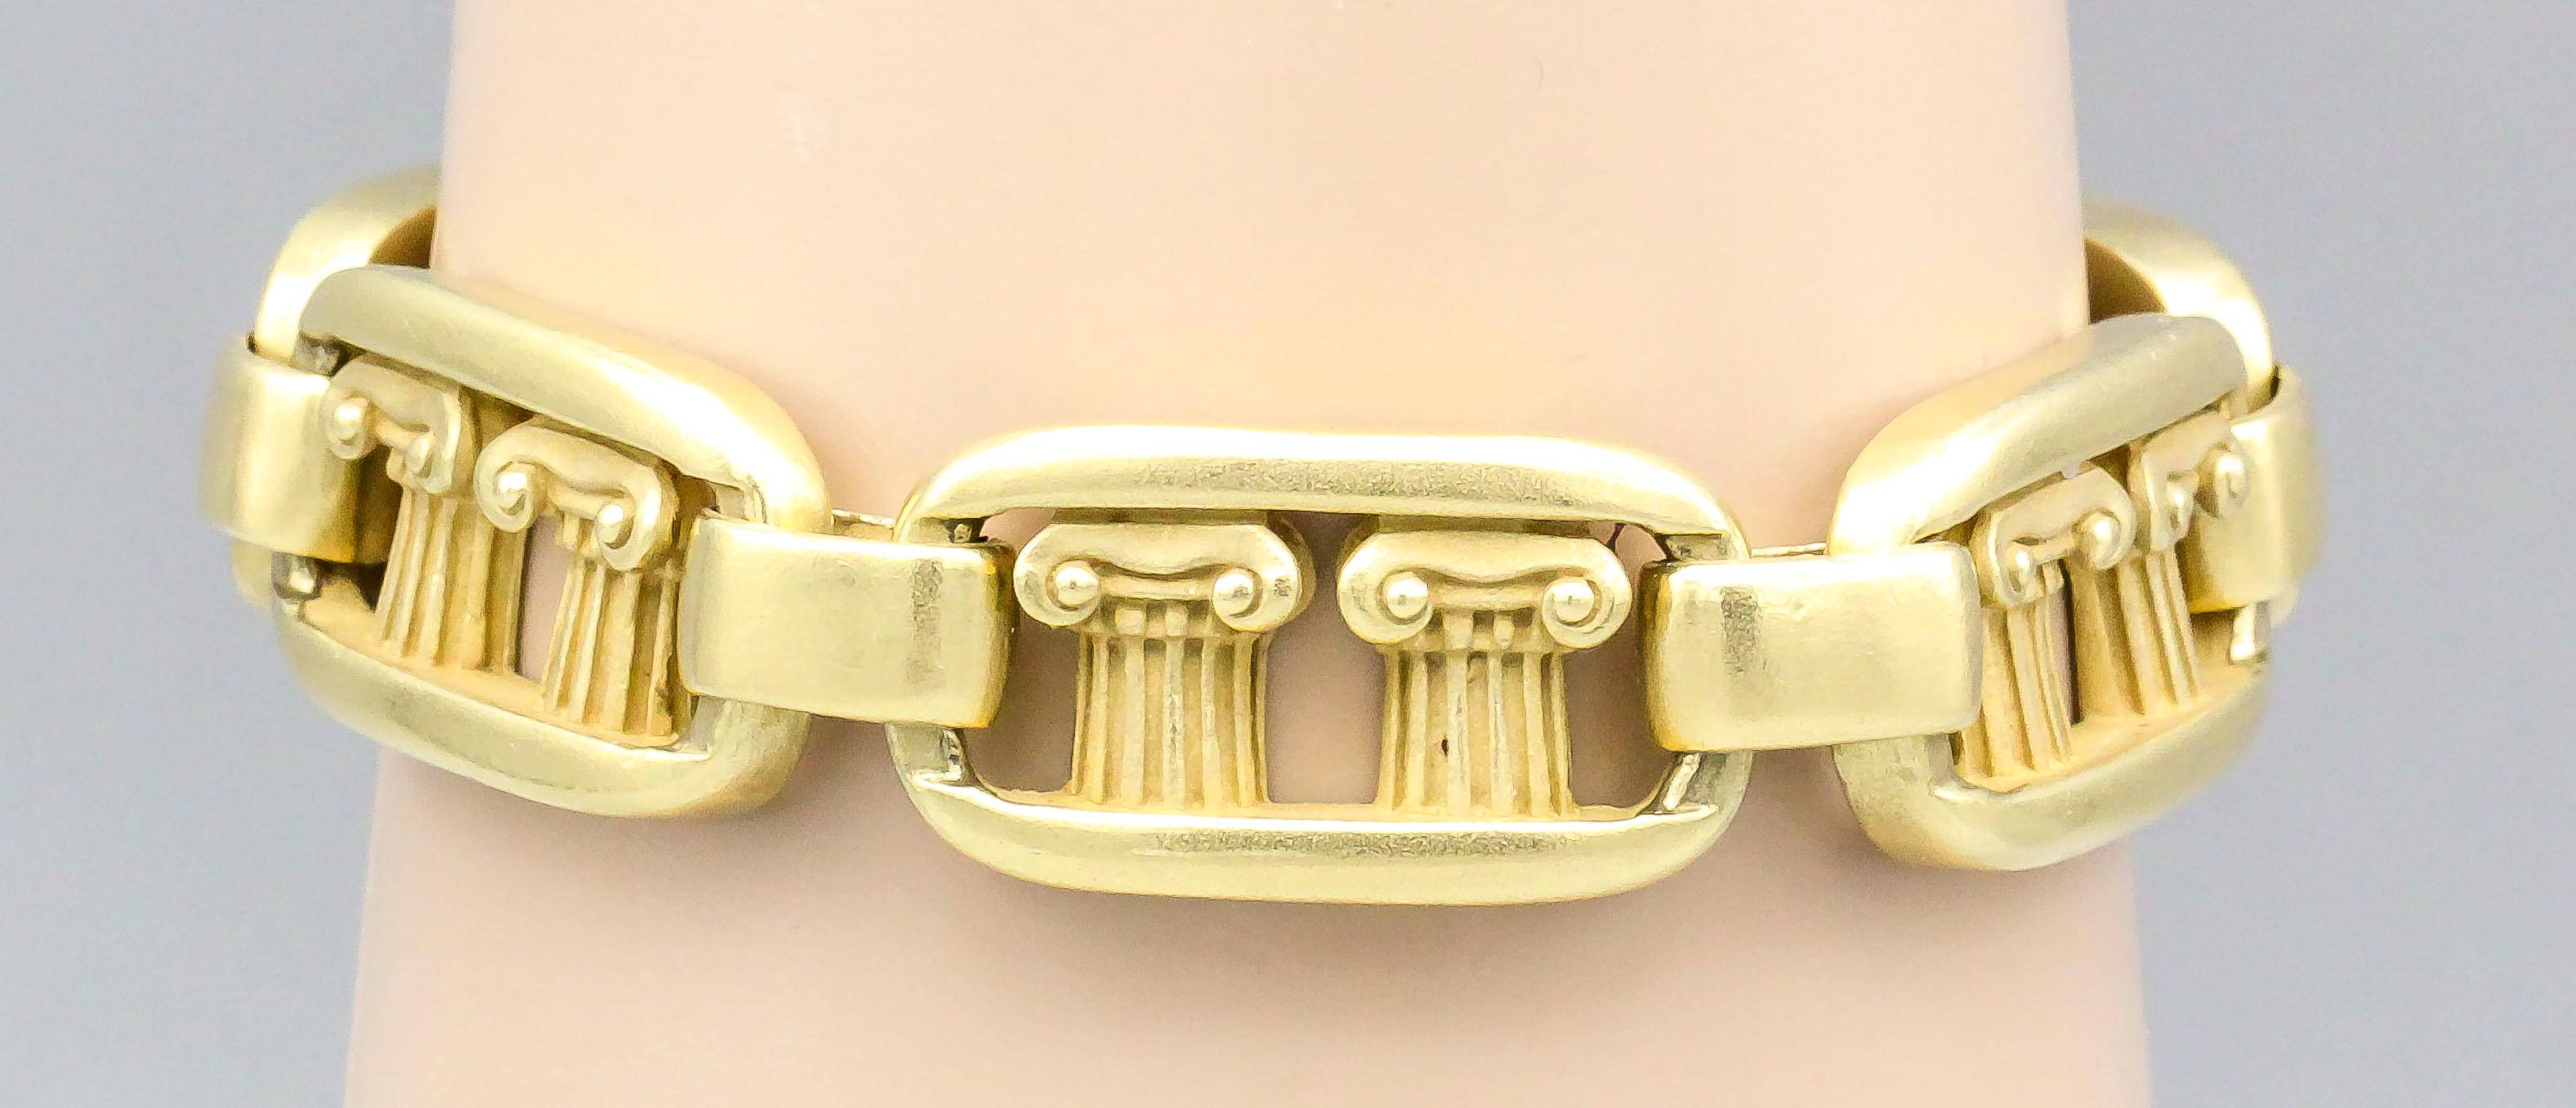 Fine 18k  Bracelet à maillons en or de KIESELSTEIN-CORD.  Ce bracelet est orné d'une colonne grecque sur chaque maillon.  Le poids total est de 120,5 grammes, la longueur totale de plus de 7,5 pouces.

Poinçons : KIESELSTEIN-CORD, 18k, 1980, poinçon